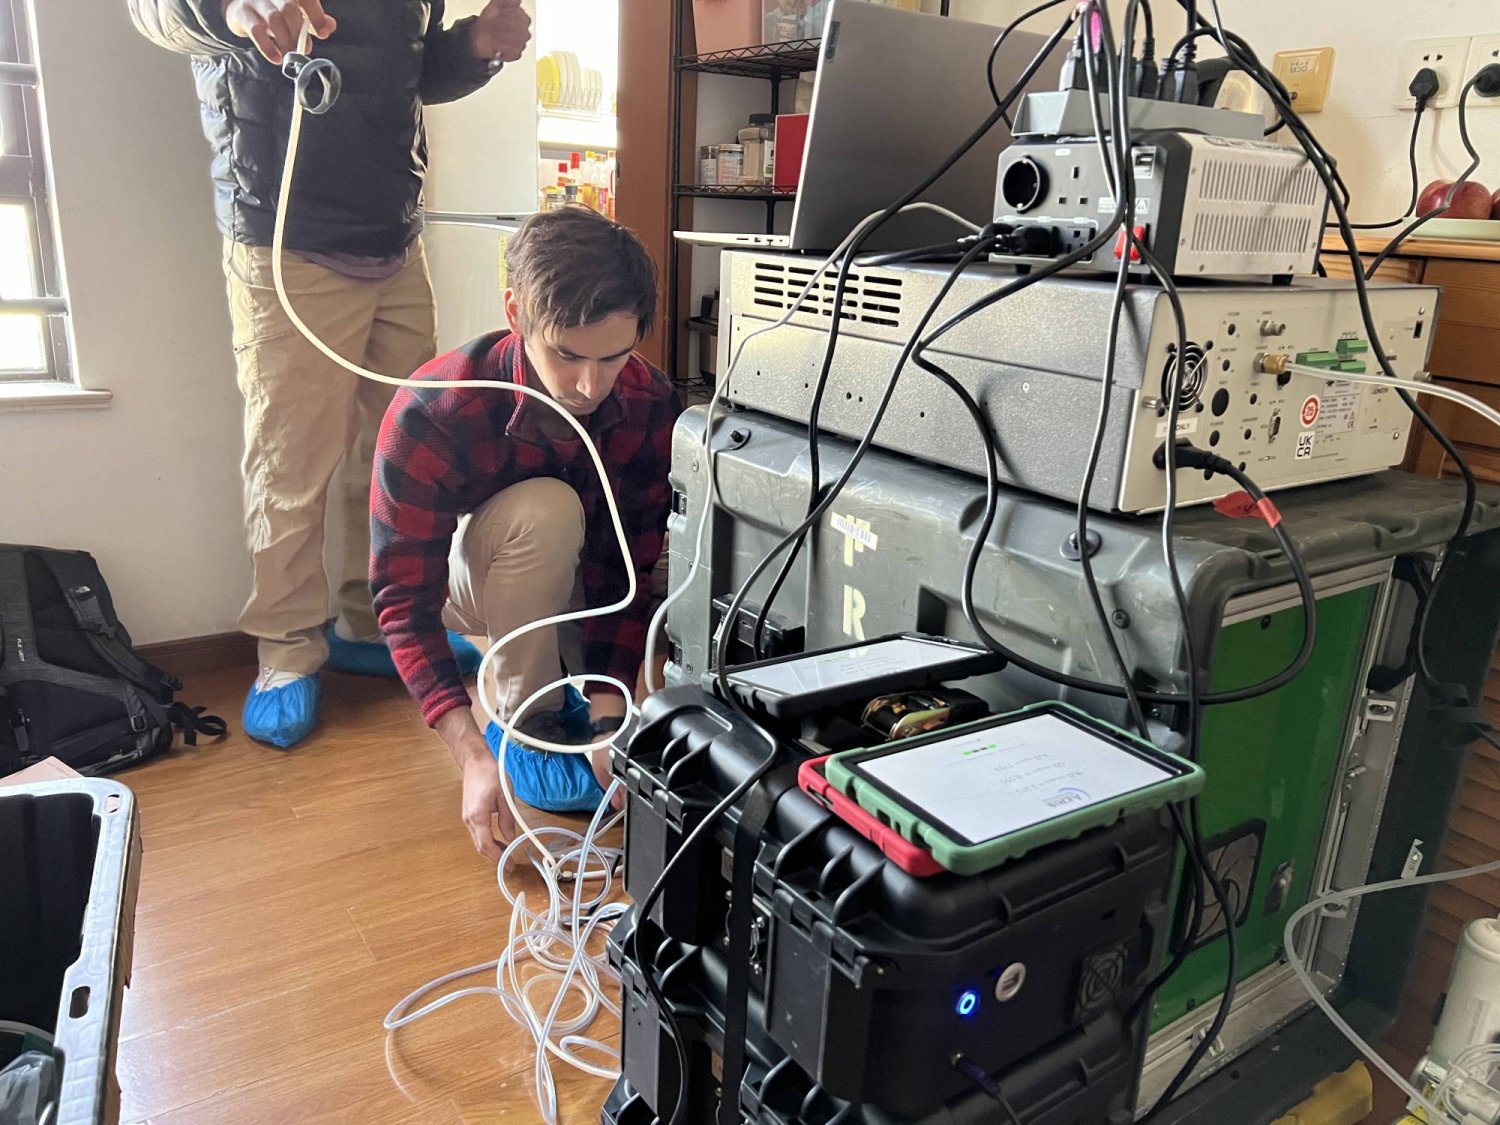 الباحثون استخدموا أجهزة استشعار لقياس تركيزات ثاني أكسيد النيتروجين في أكثر من 100 منزل (جامعة ستانفورد)